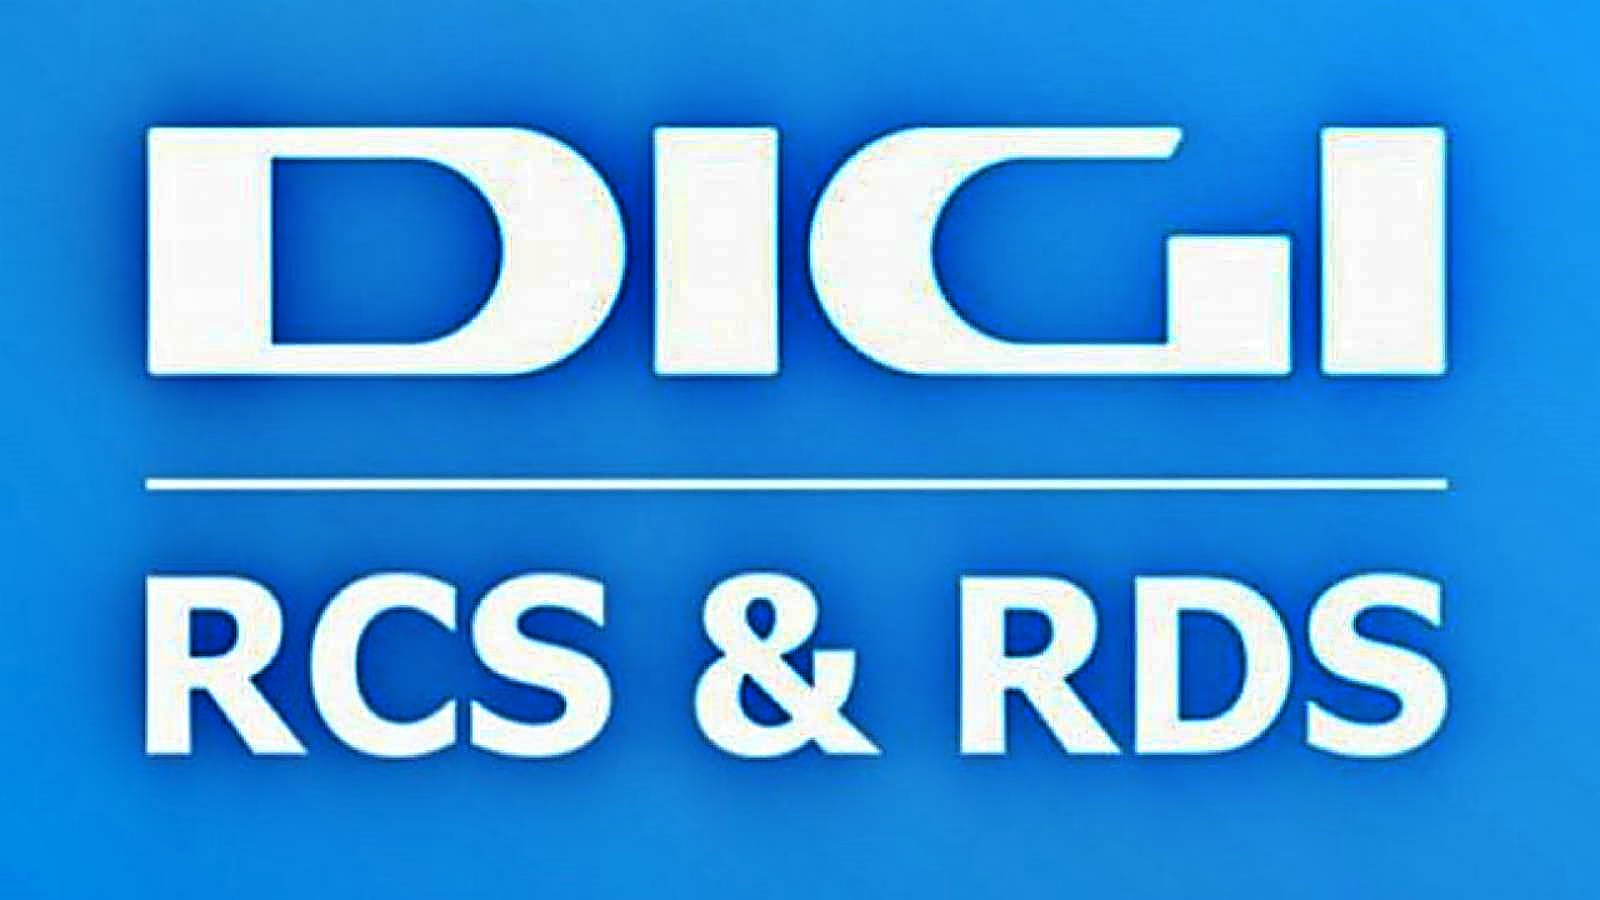 Offizielle Ankündigung von RCS & RDS WICHTIGES rumänisches Unternehmen